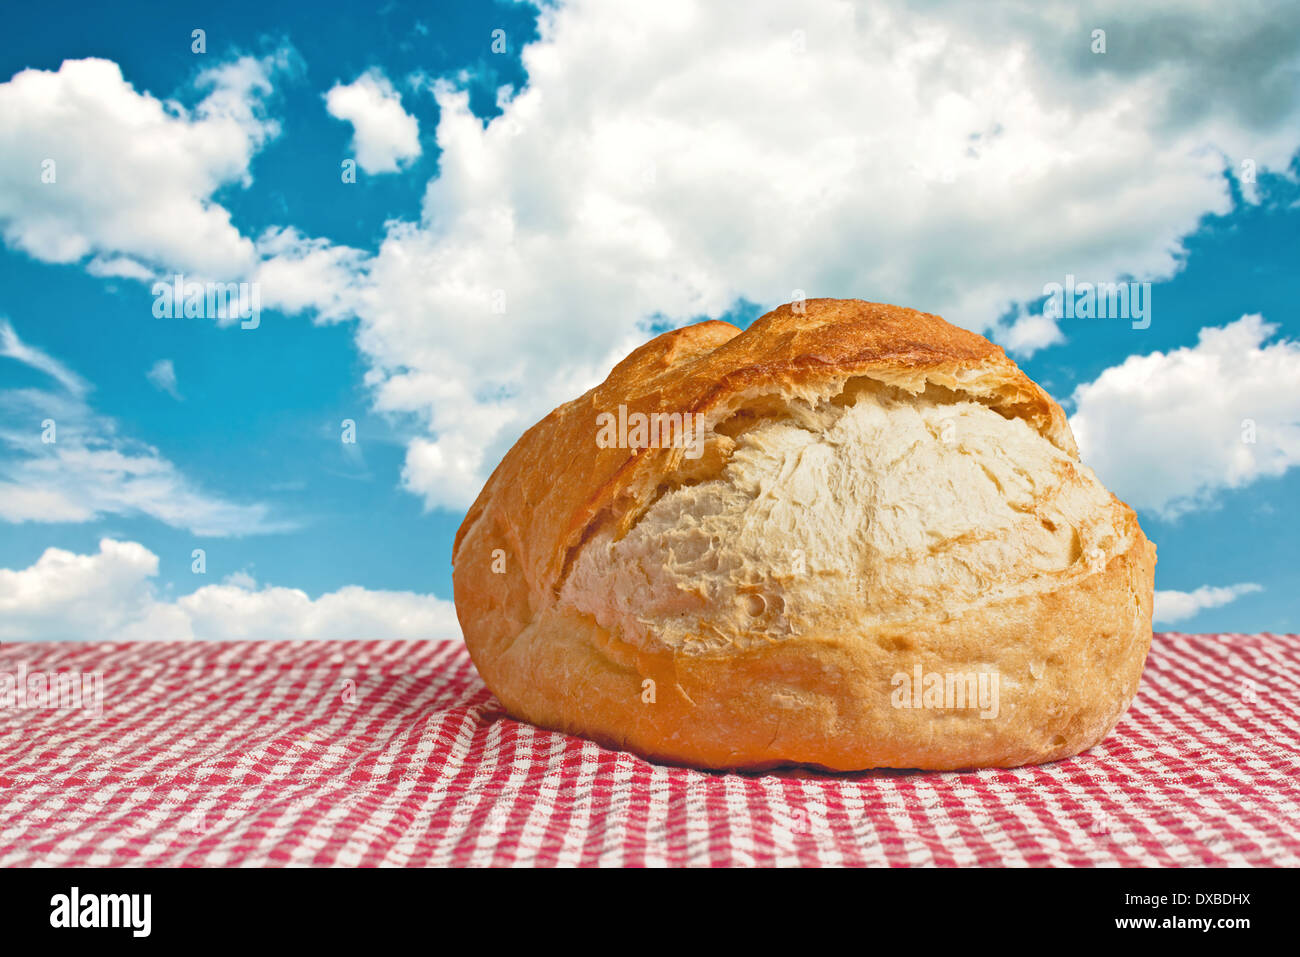 Delicious bread bun on picnic table outdoors. Stock Photo